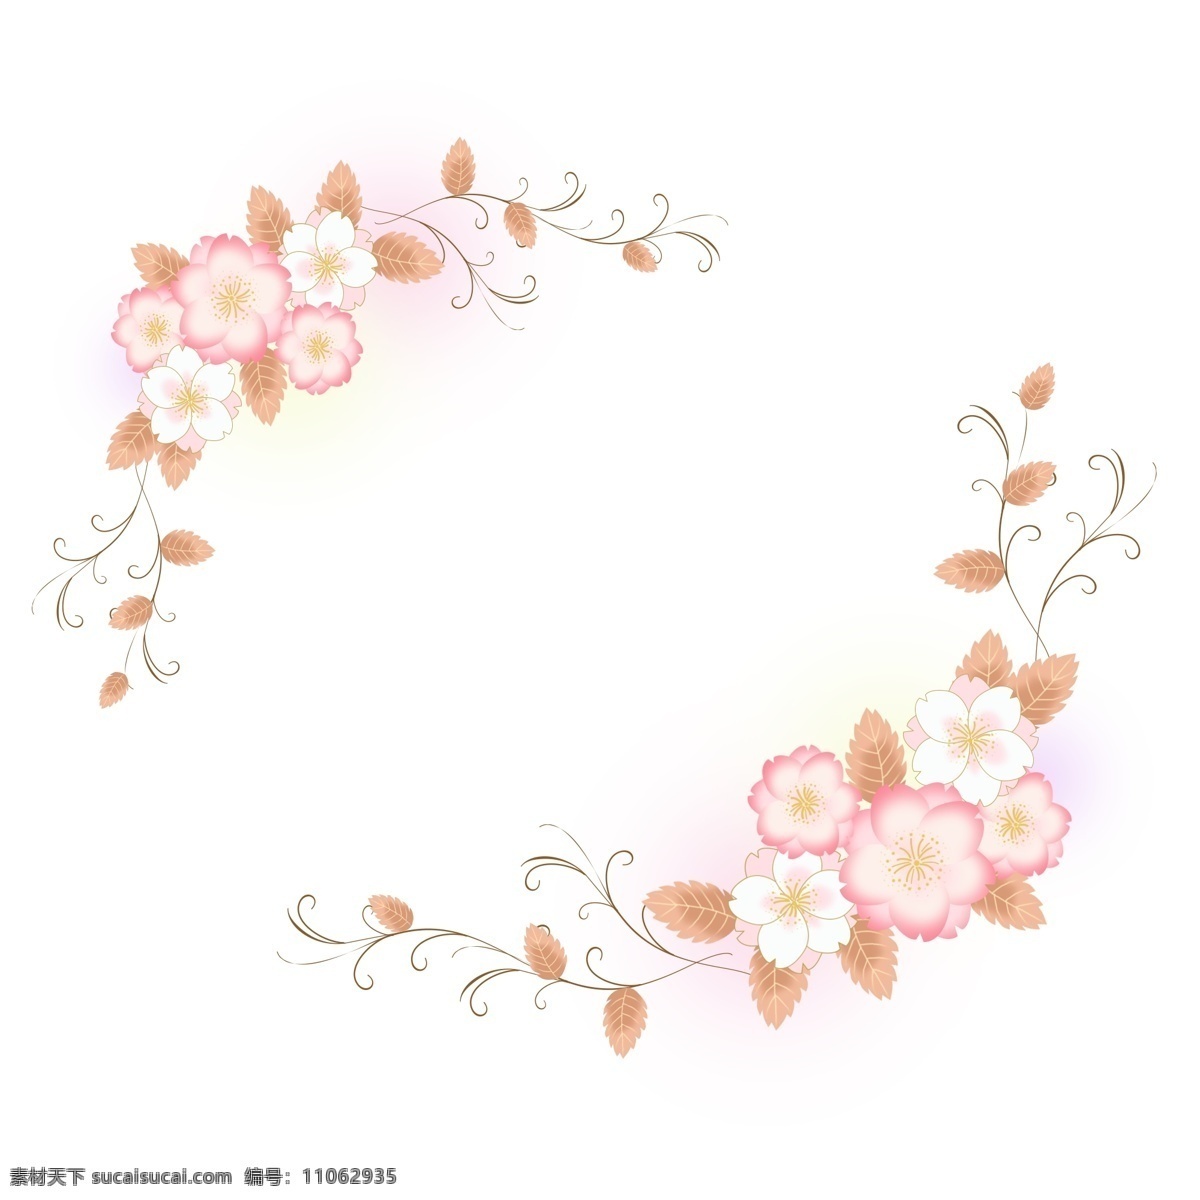 卡通 樱花 浪漫 花卉 边框 手绘 植物 手绘边框 粉色